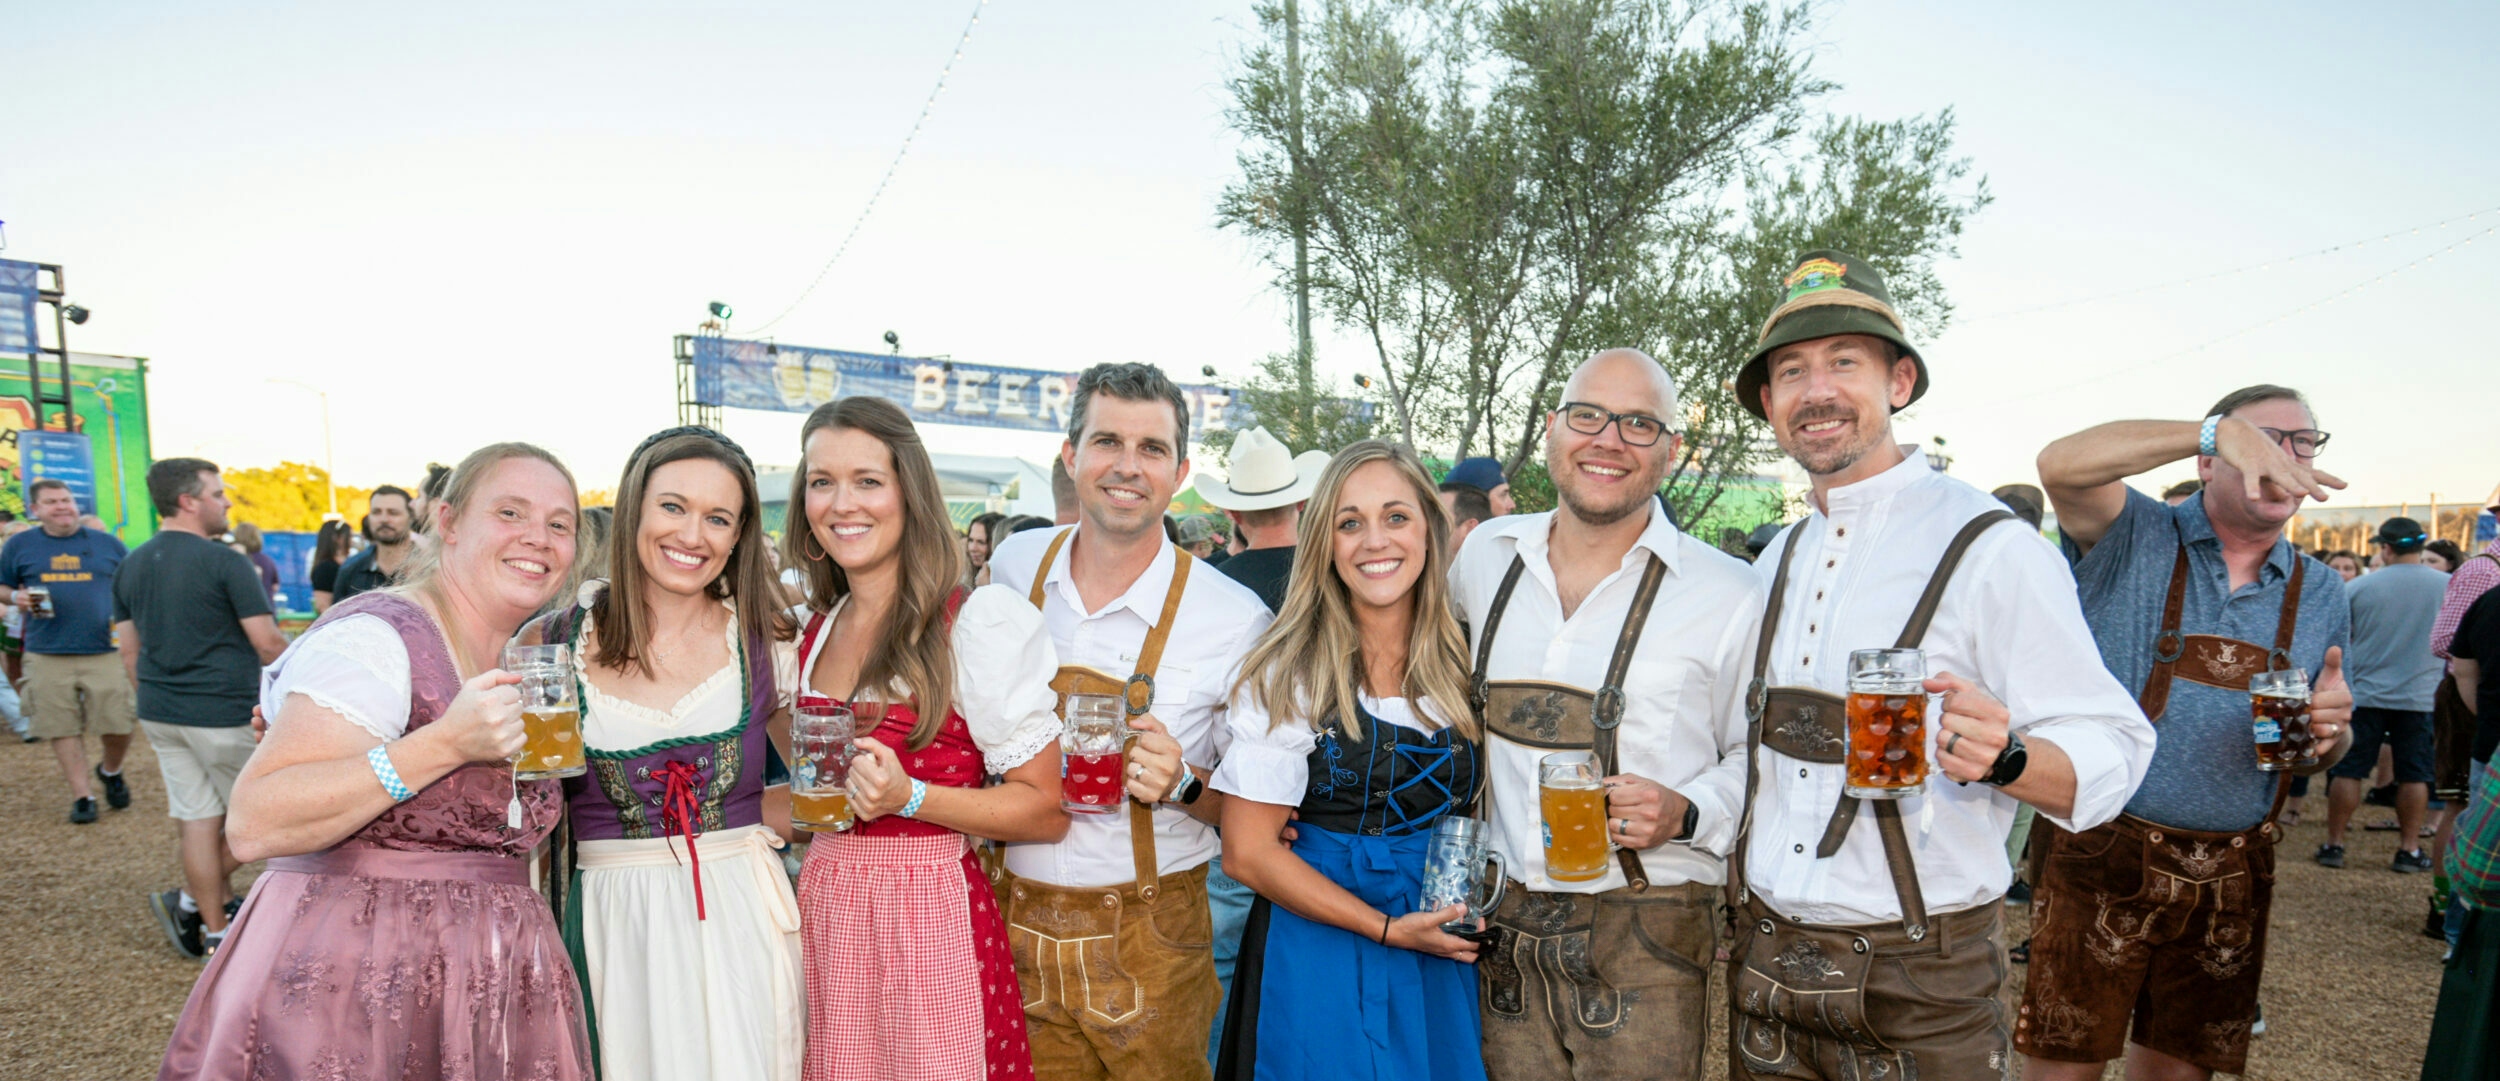 People in costume enjoy Oktoberfest party